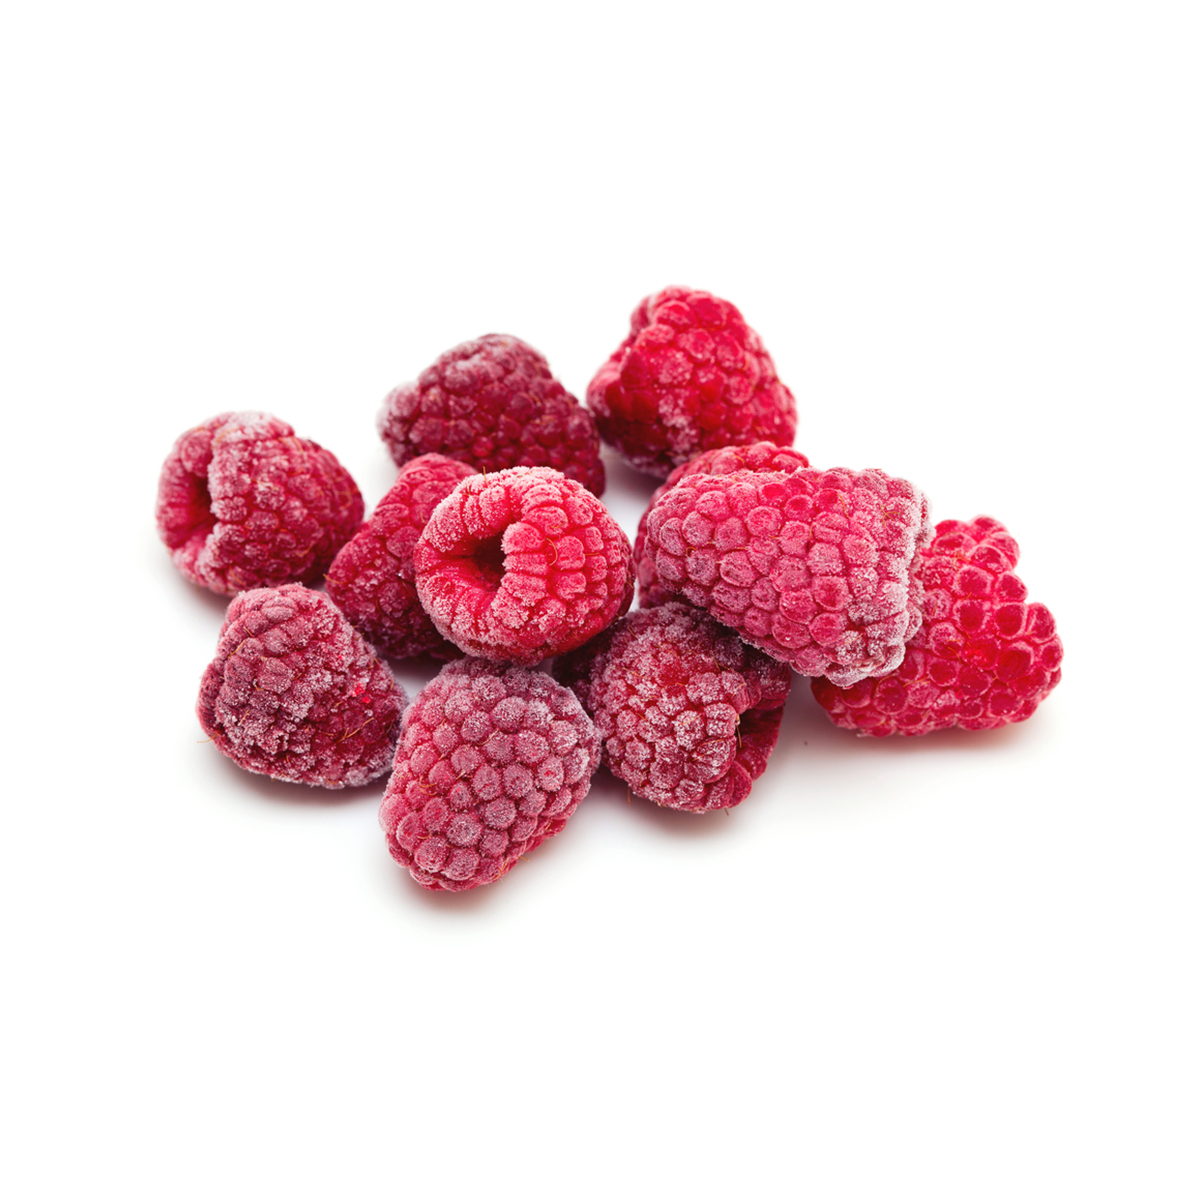 Frozen Organic Raspberries | Raspberries | Baldor Specialty Foods